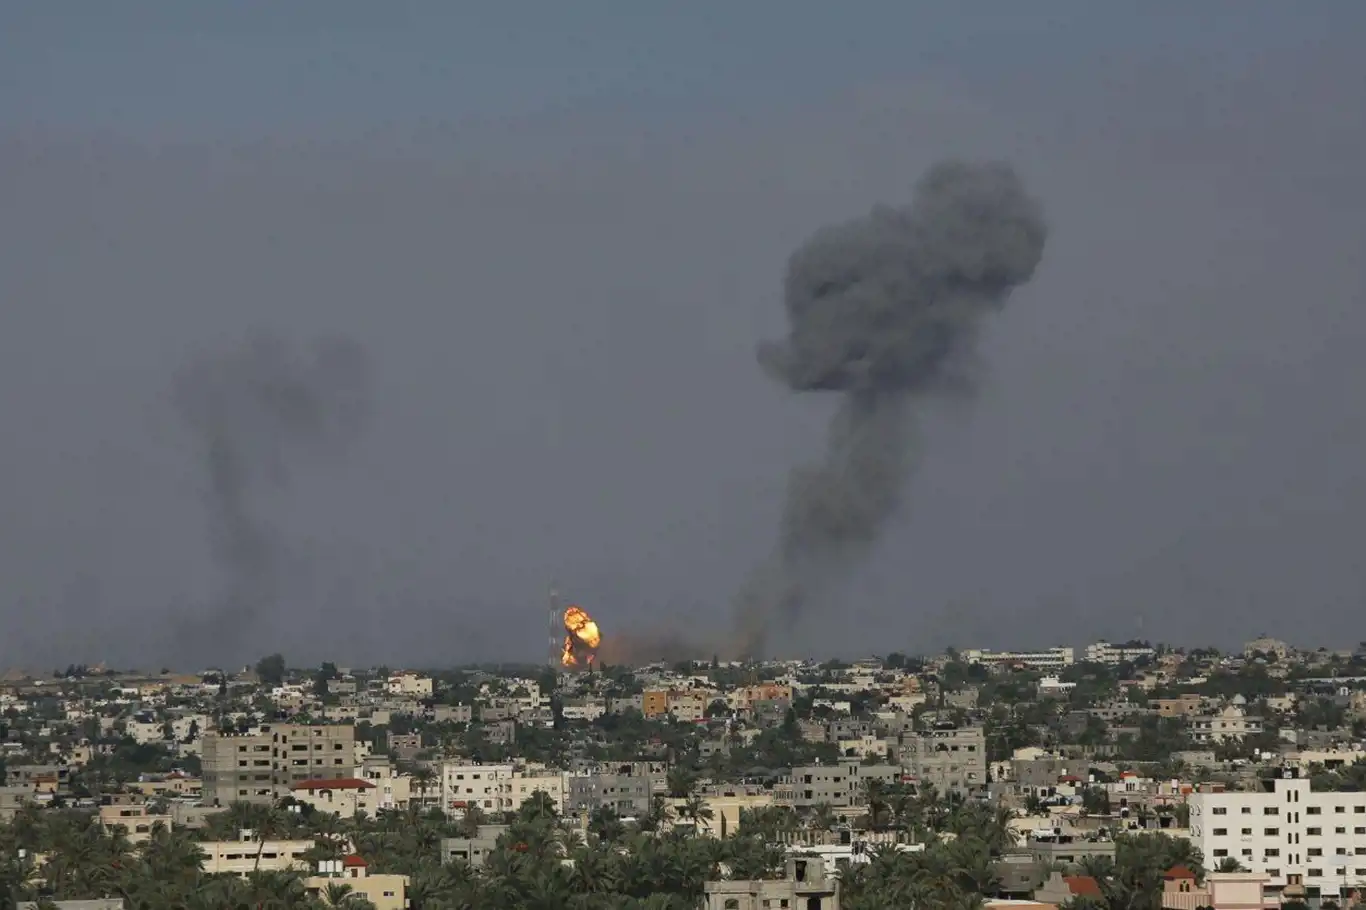 İşgalci rejim, Gazze'ye yönelik saldırıdan önce zehirli gaz kullanıyor